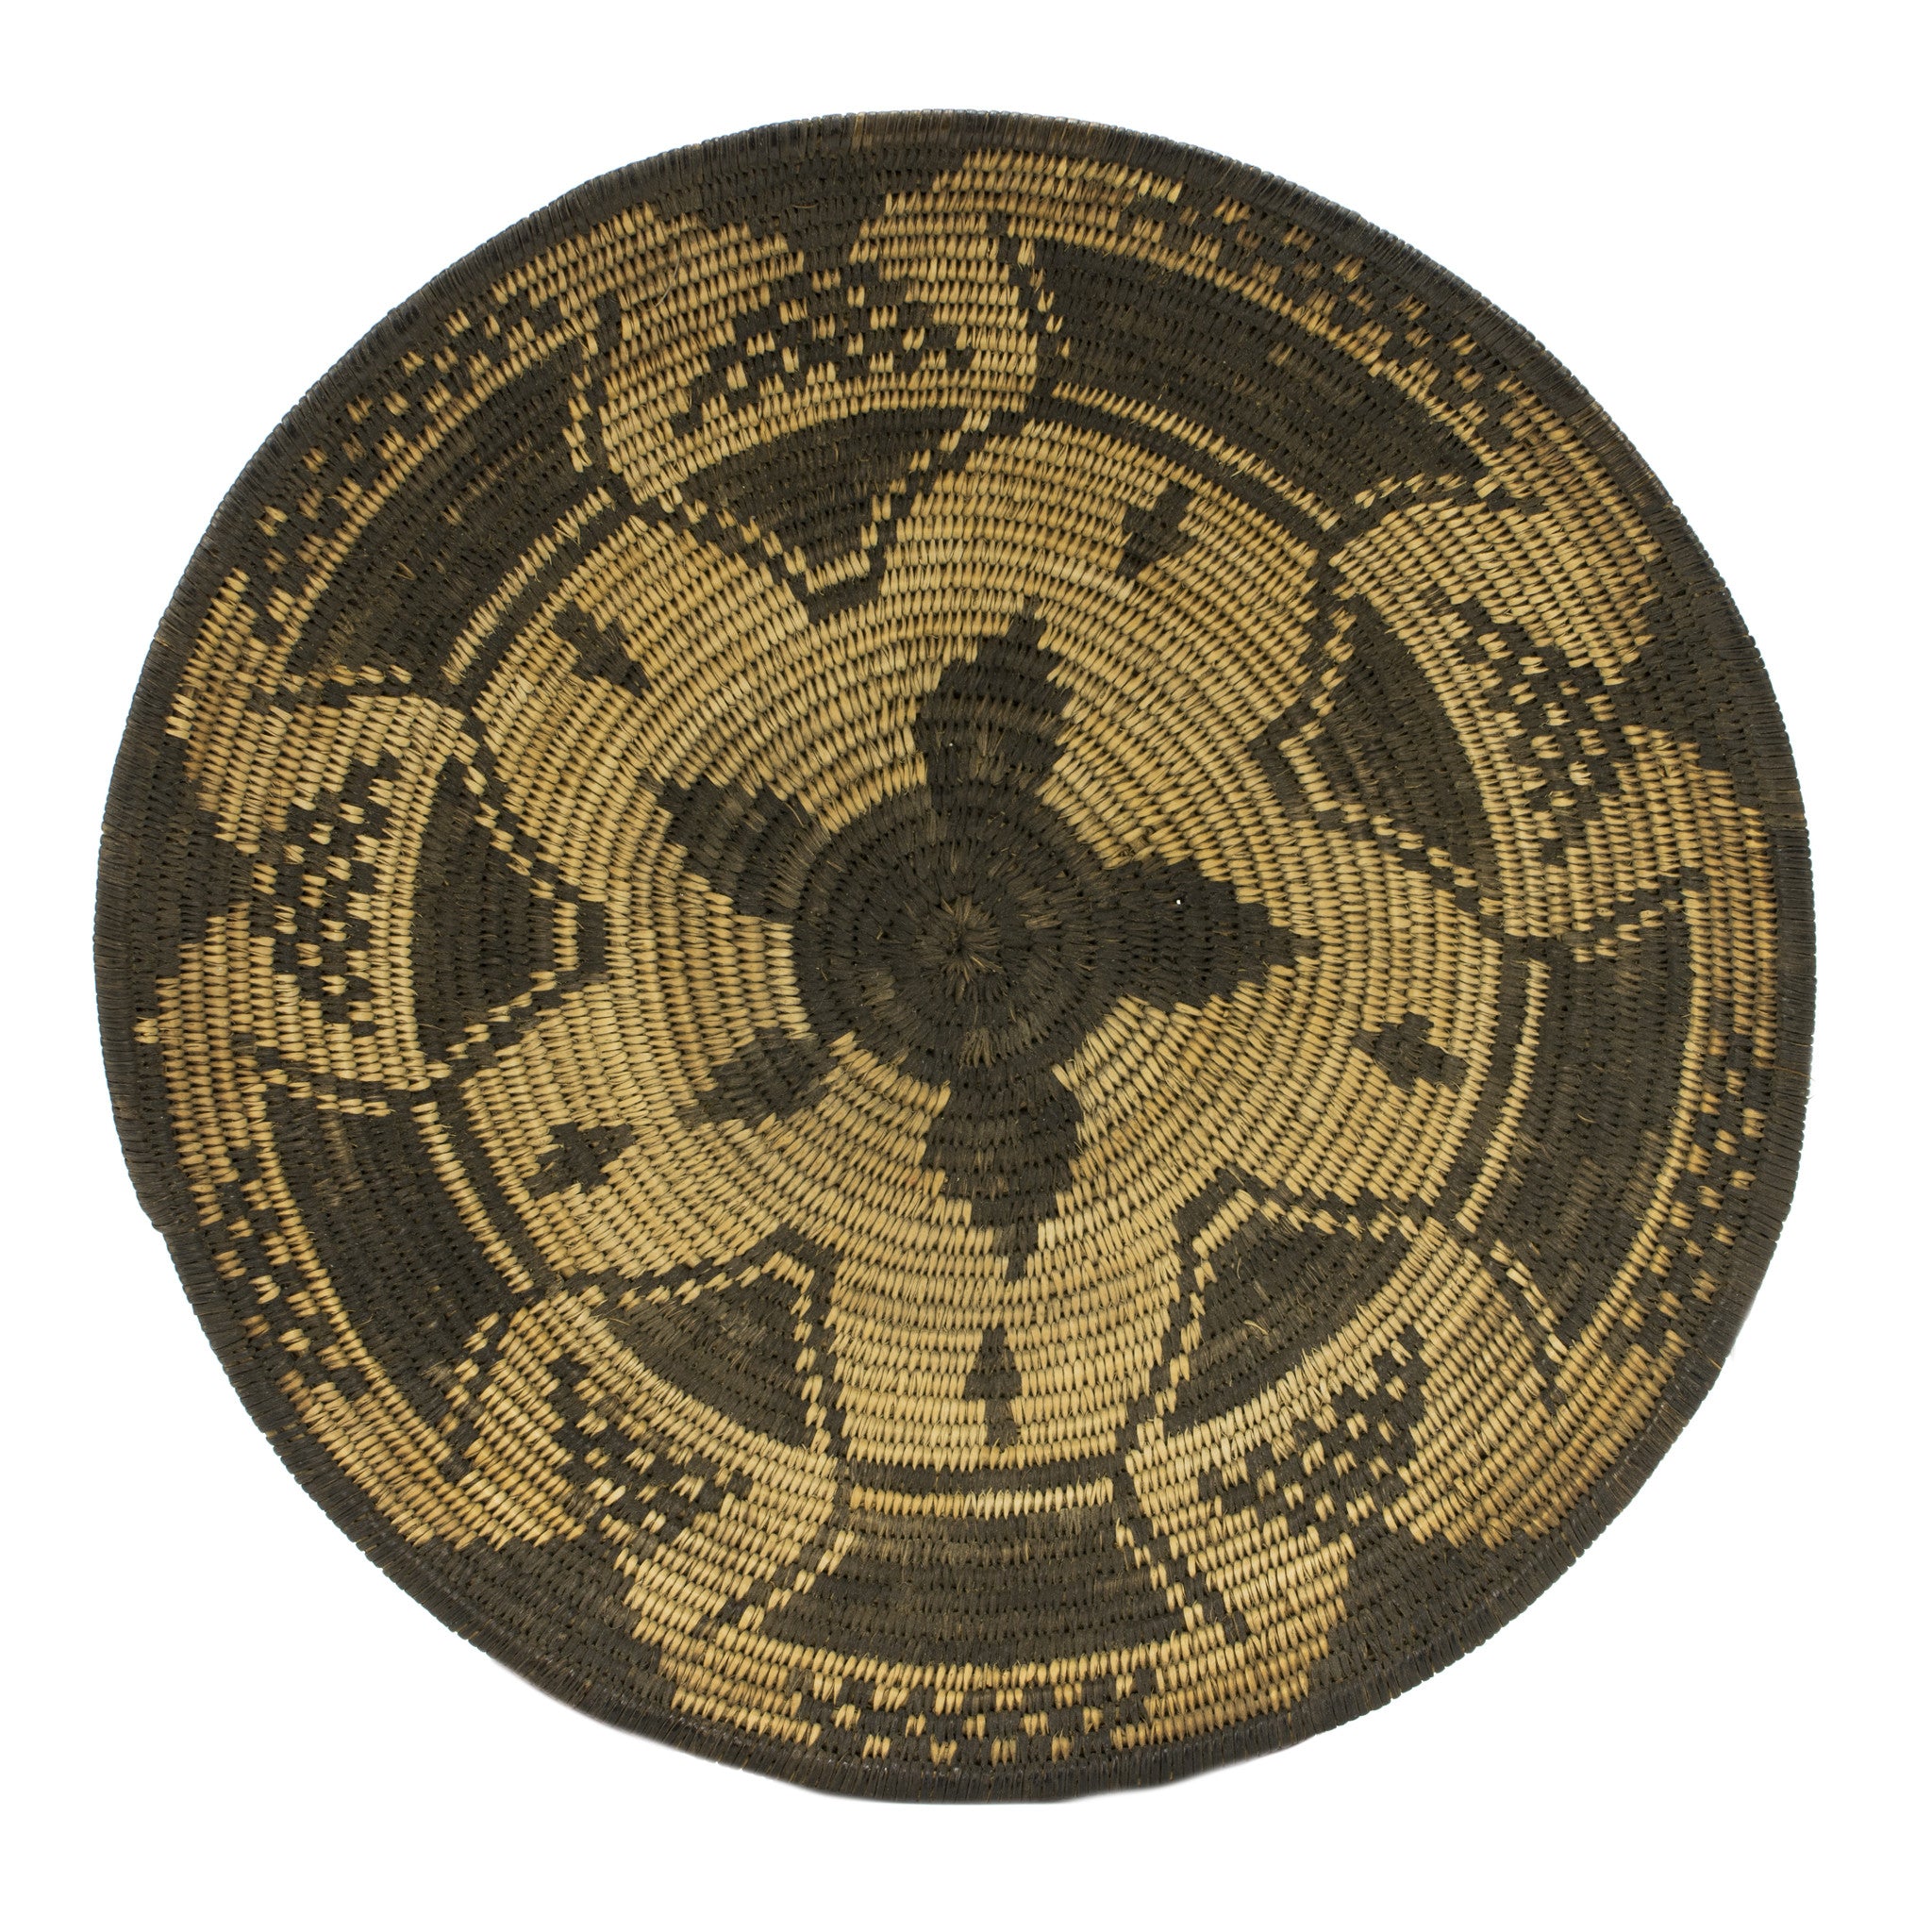 Yavapai Basket, Native, Basketry, Plate